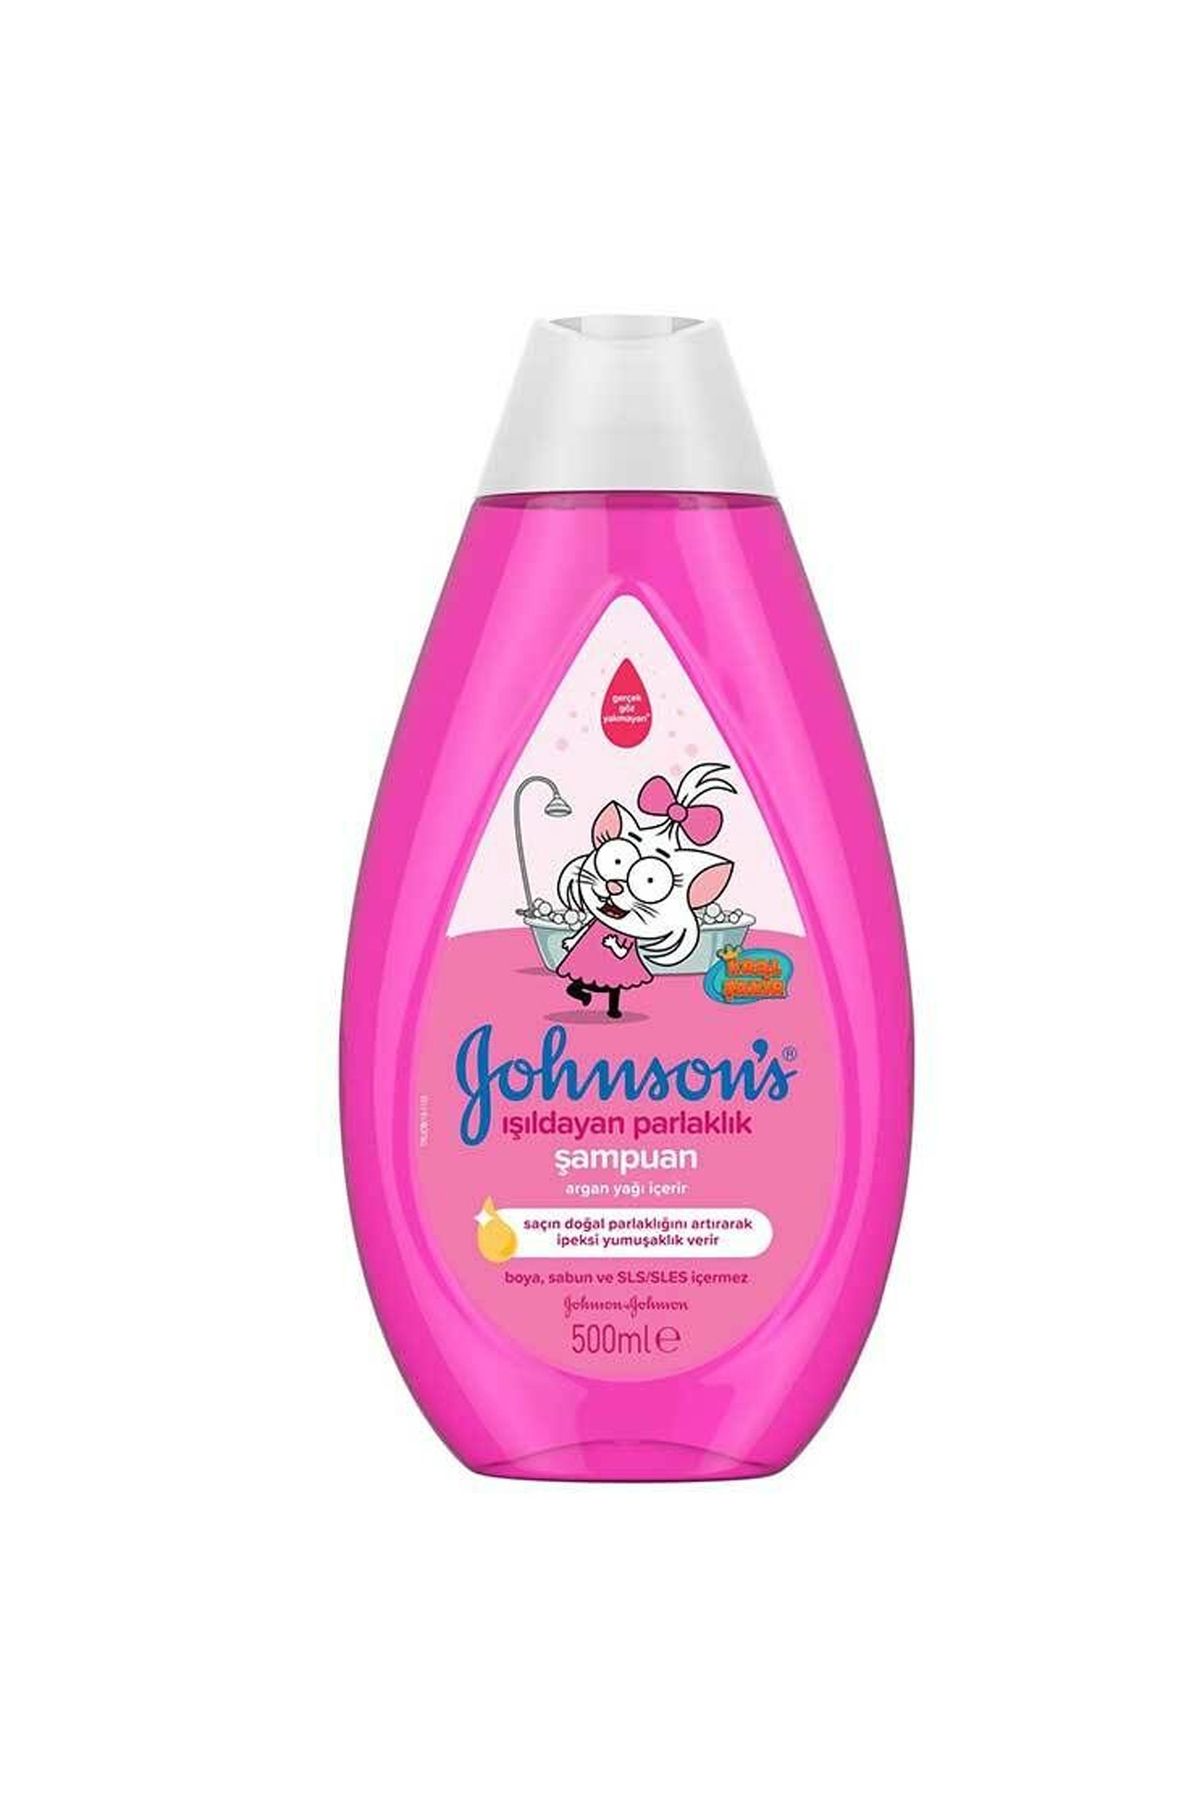 Johnson's Johnsons Kral Şakir Işıldayan Parlaklık Şampuan 500 ml